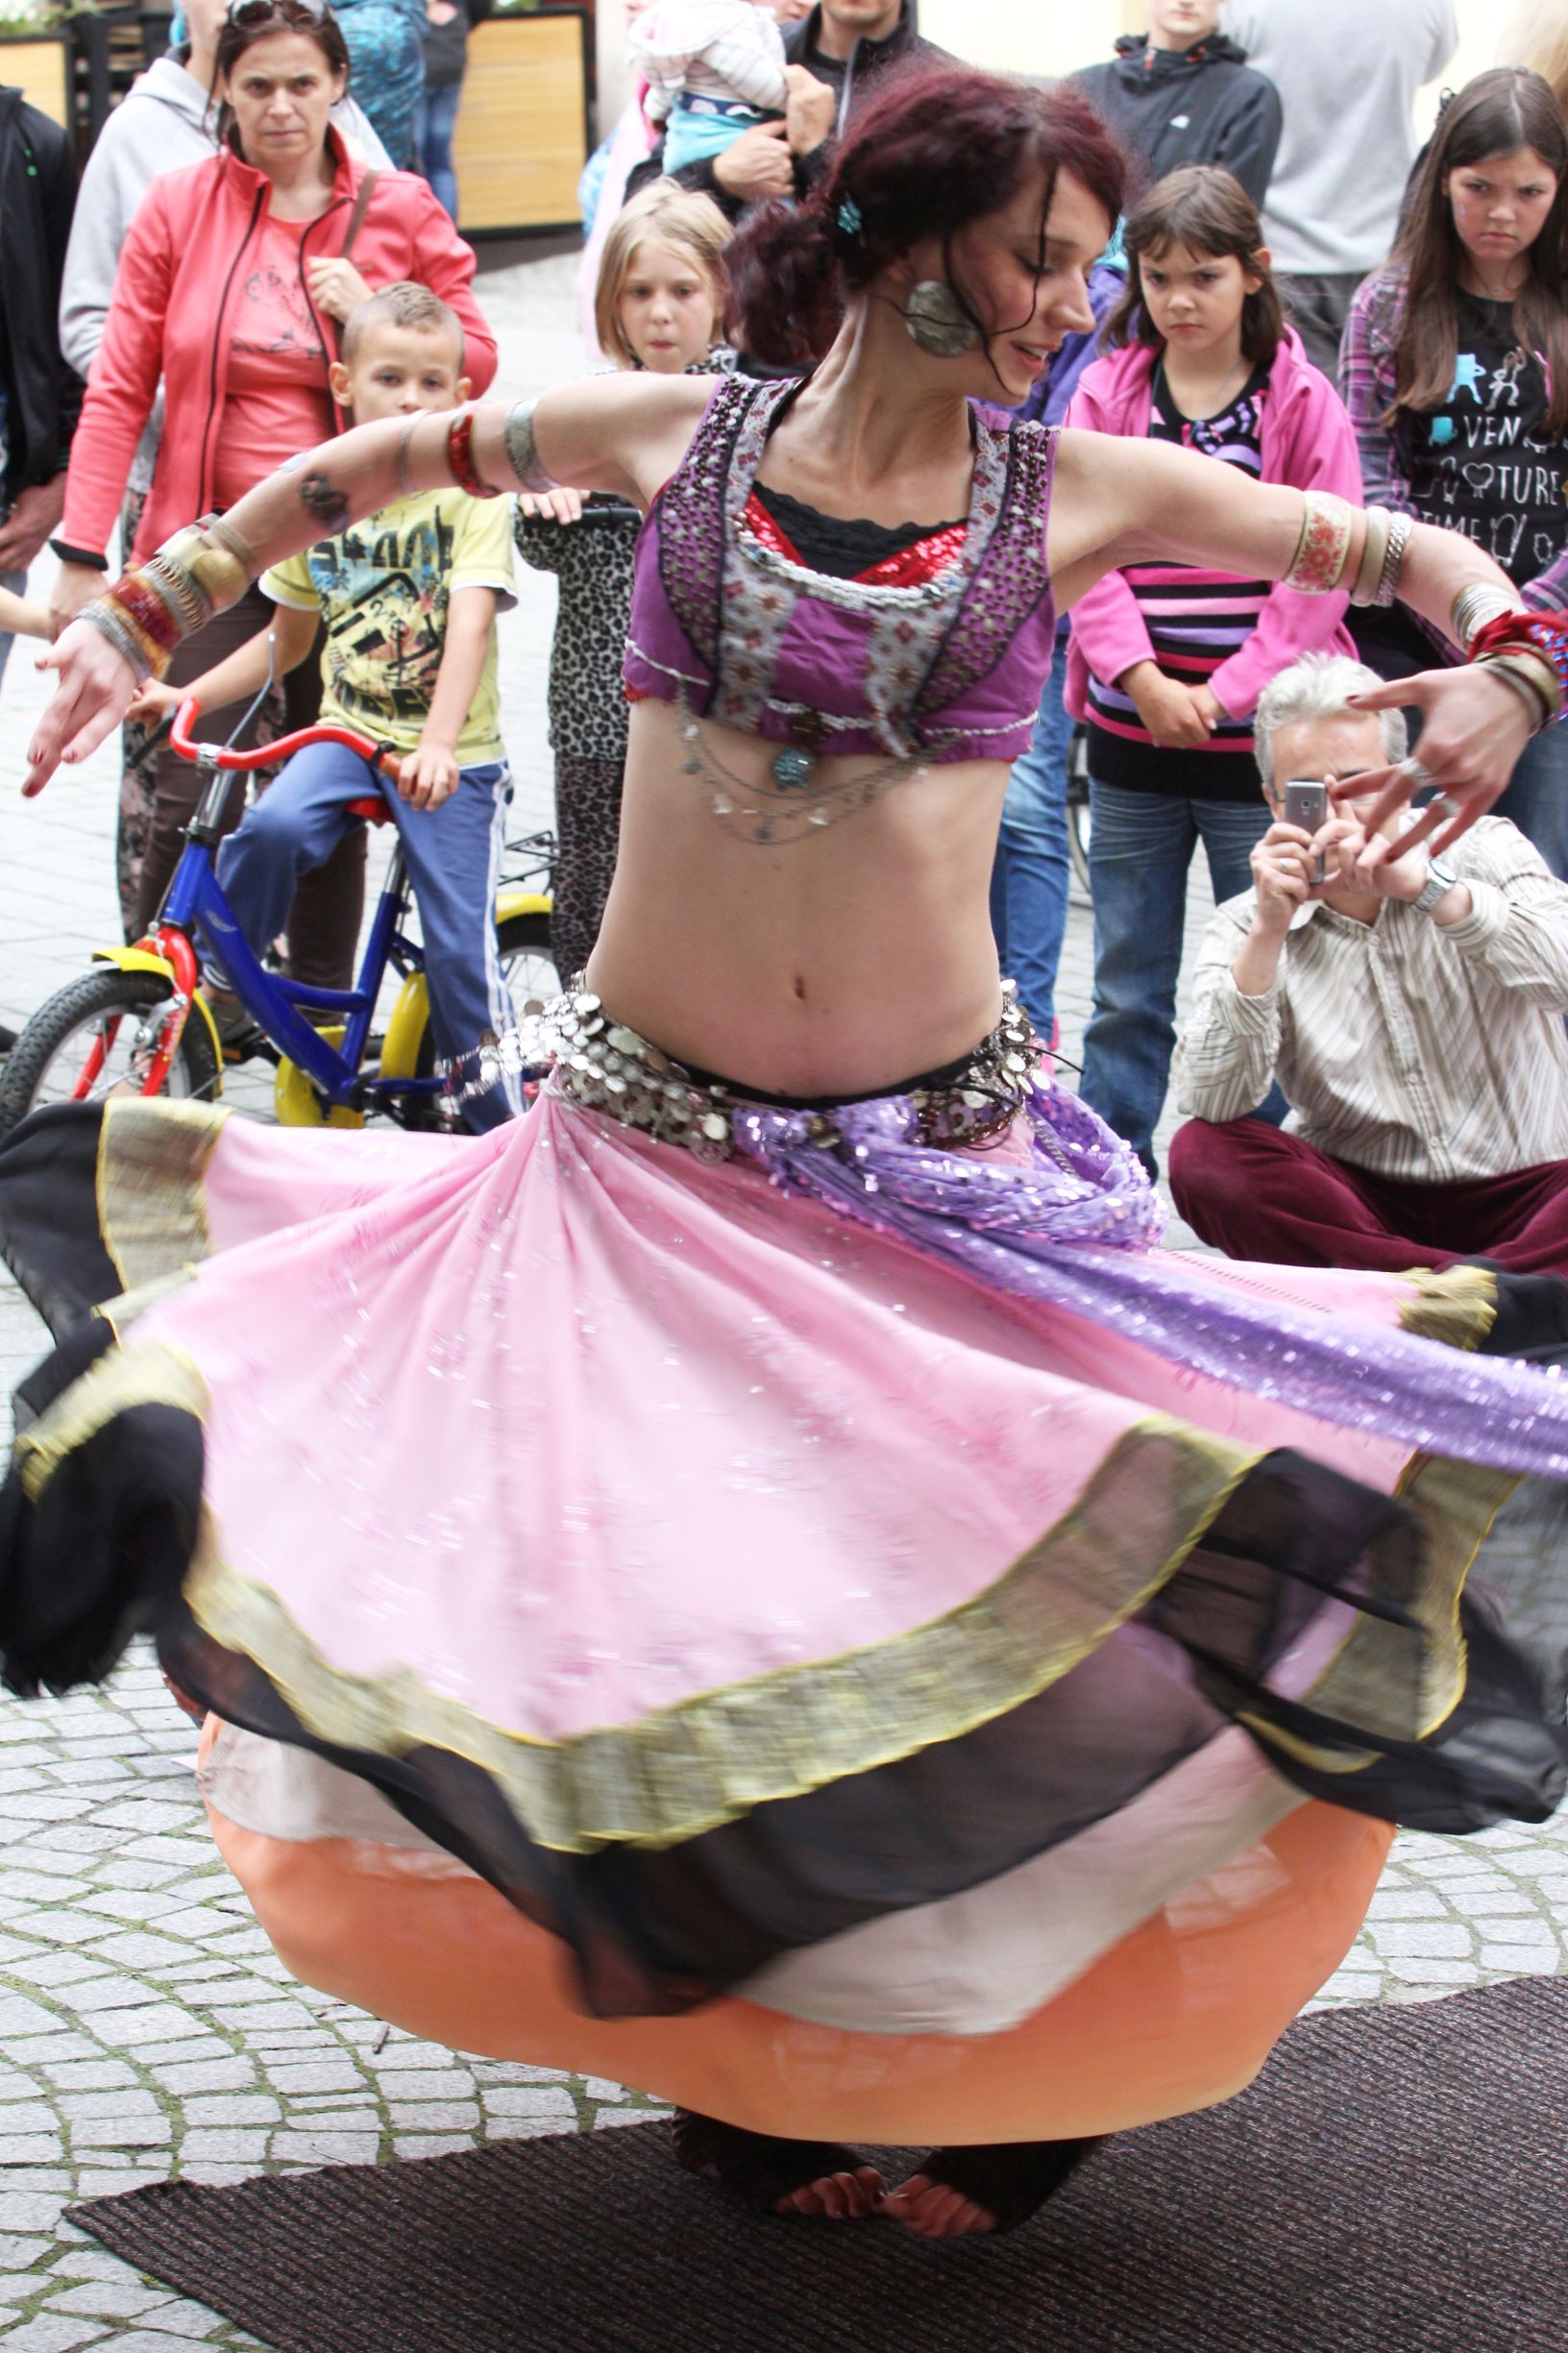 Dancer Lucy z Czech - pokaz taneczny podczas festiwalu BuskerBus